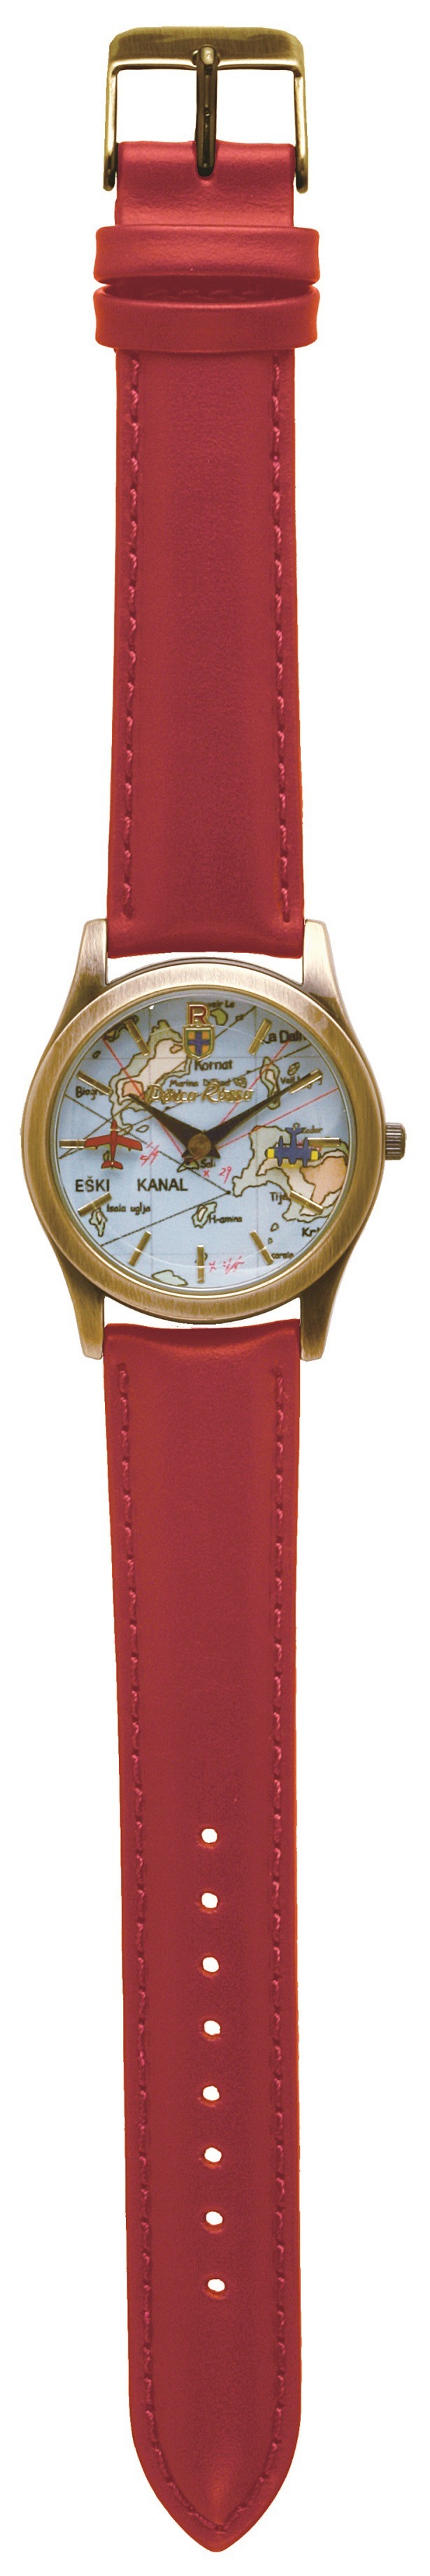 真っ赤なベルトにゴールドの時計ケースが映えるデザイン